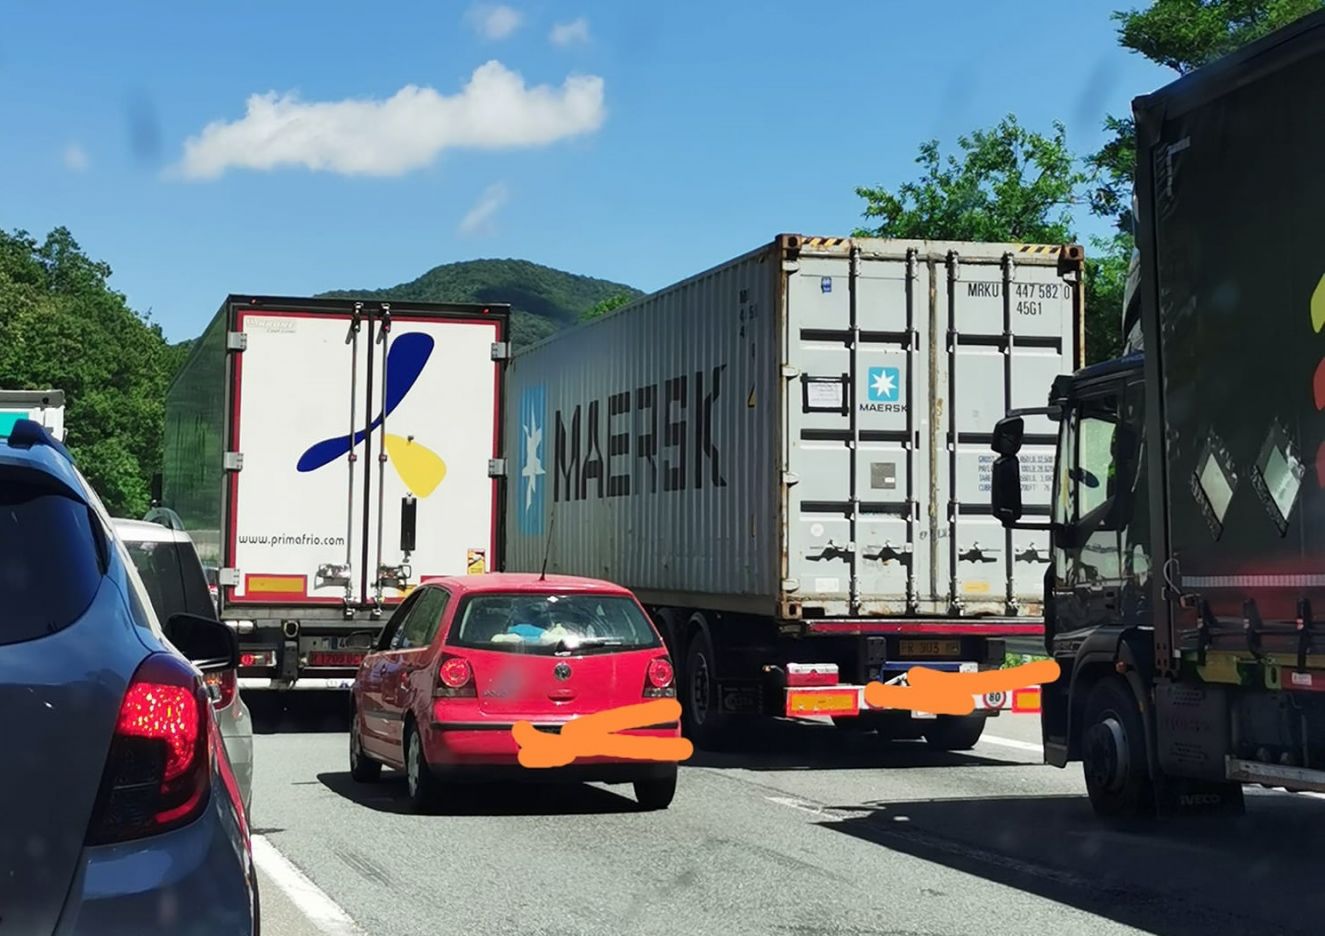 Aumenti carburante, Trasportounito: "Lunedì si fermeranno 70.000 mezzi pesanti